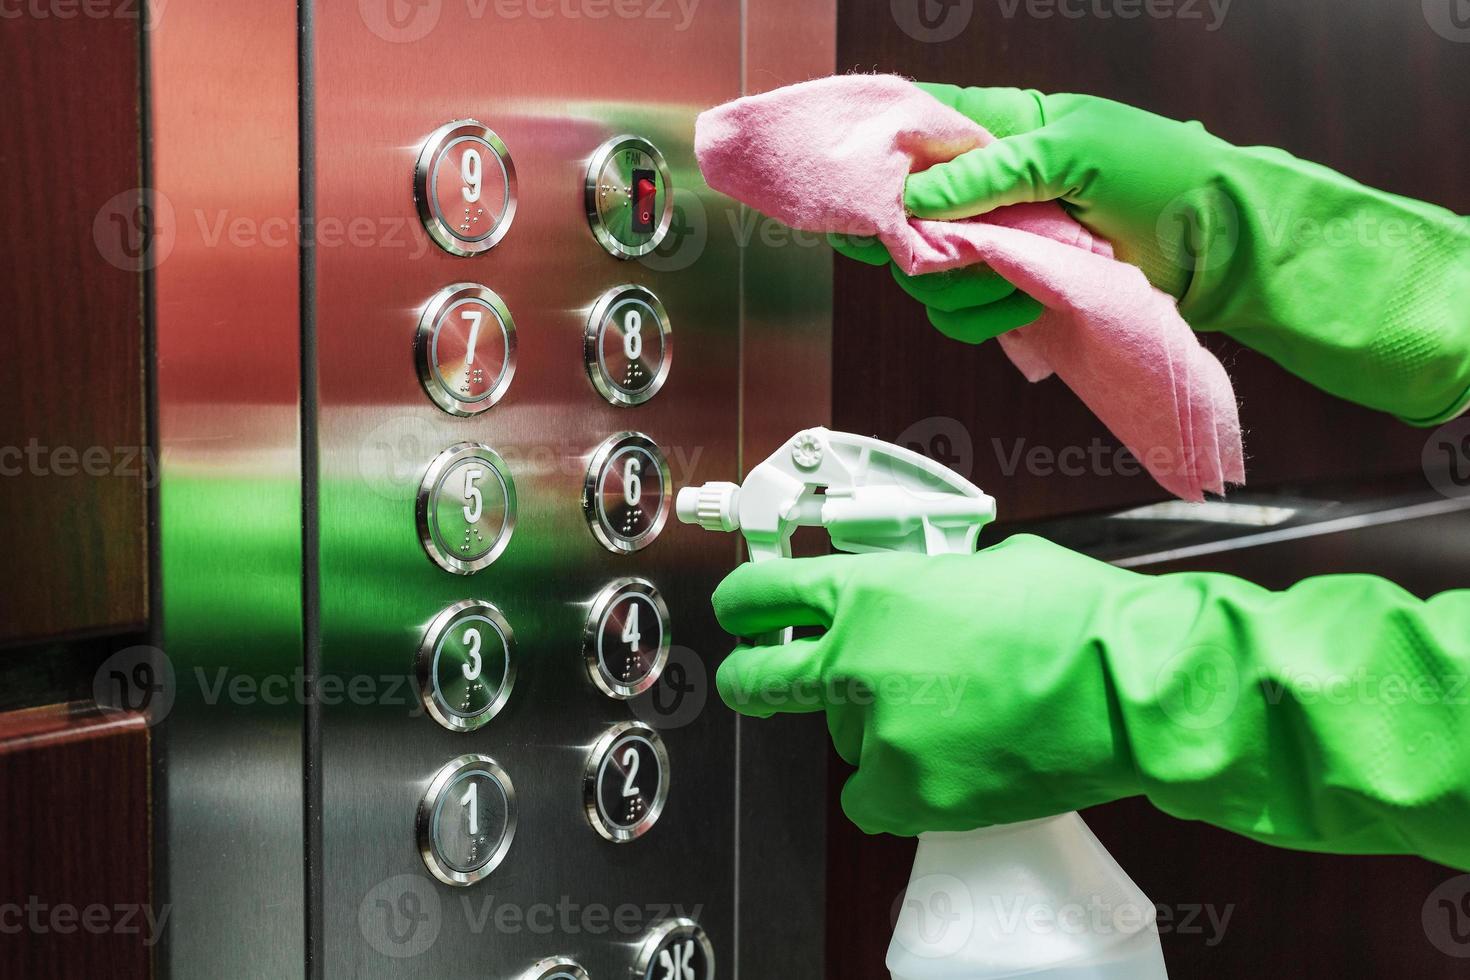 désinfection et soins hygiéniques à l'aide d'un vaporisateur d'alcool sur le bouton de l'ascenseur. photo